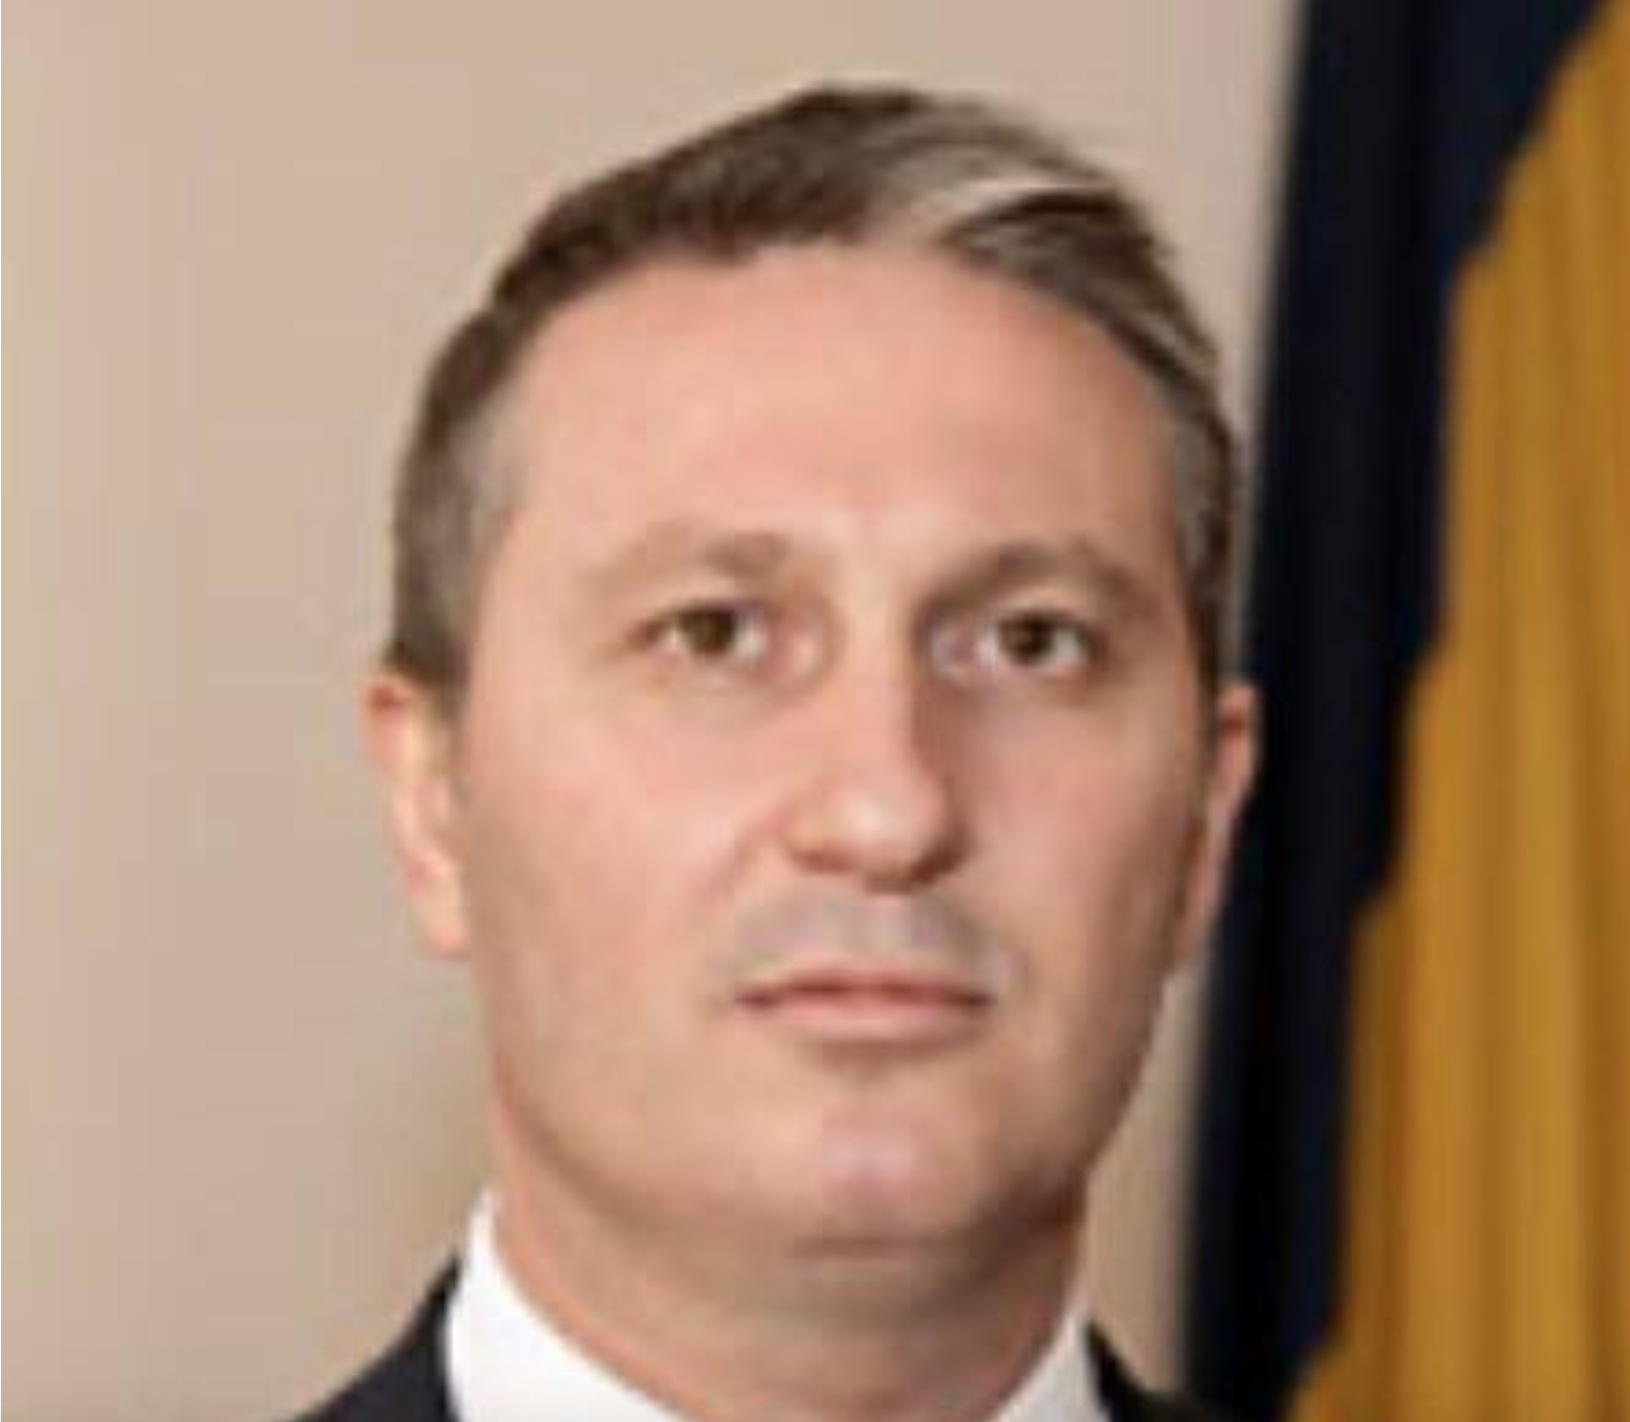 Virgil Laurențiu Găman a fost achitat de către Tribunalul București pentru toate infracțiunile de care a fost acuzat de către DNA